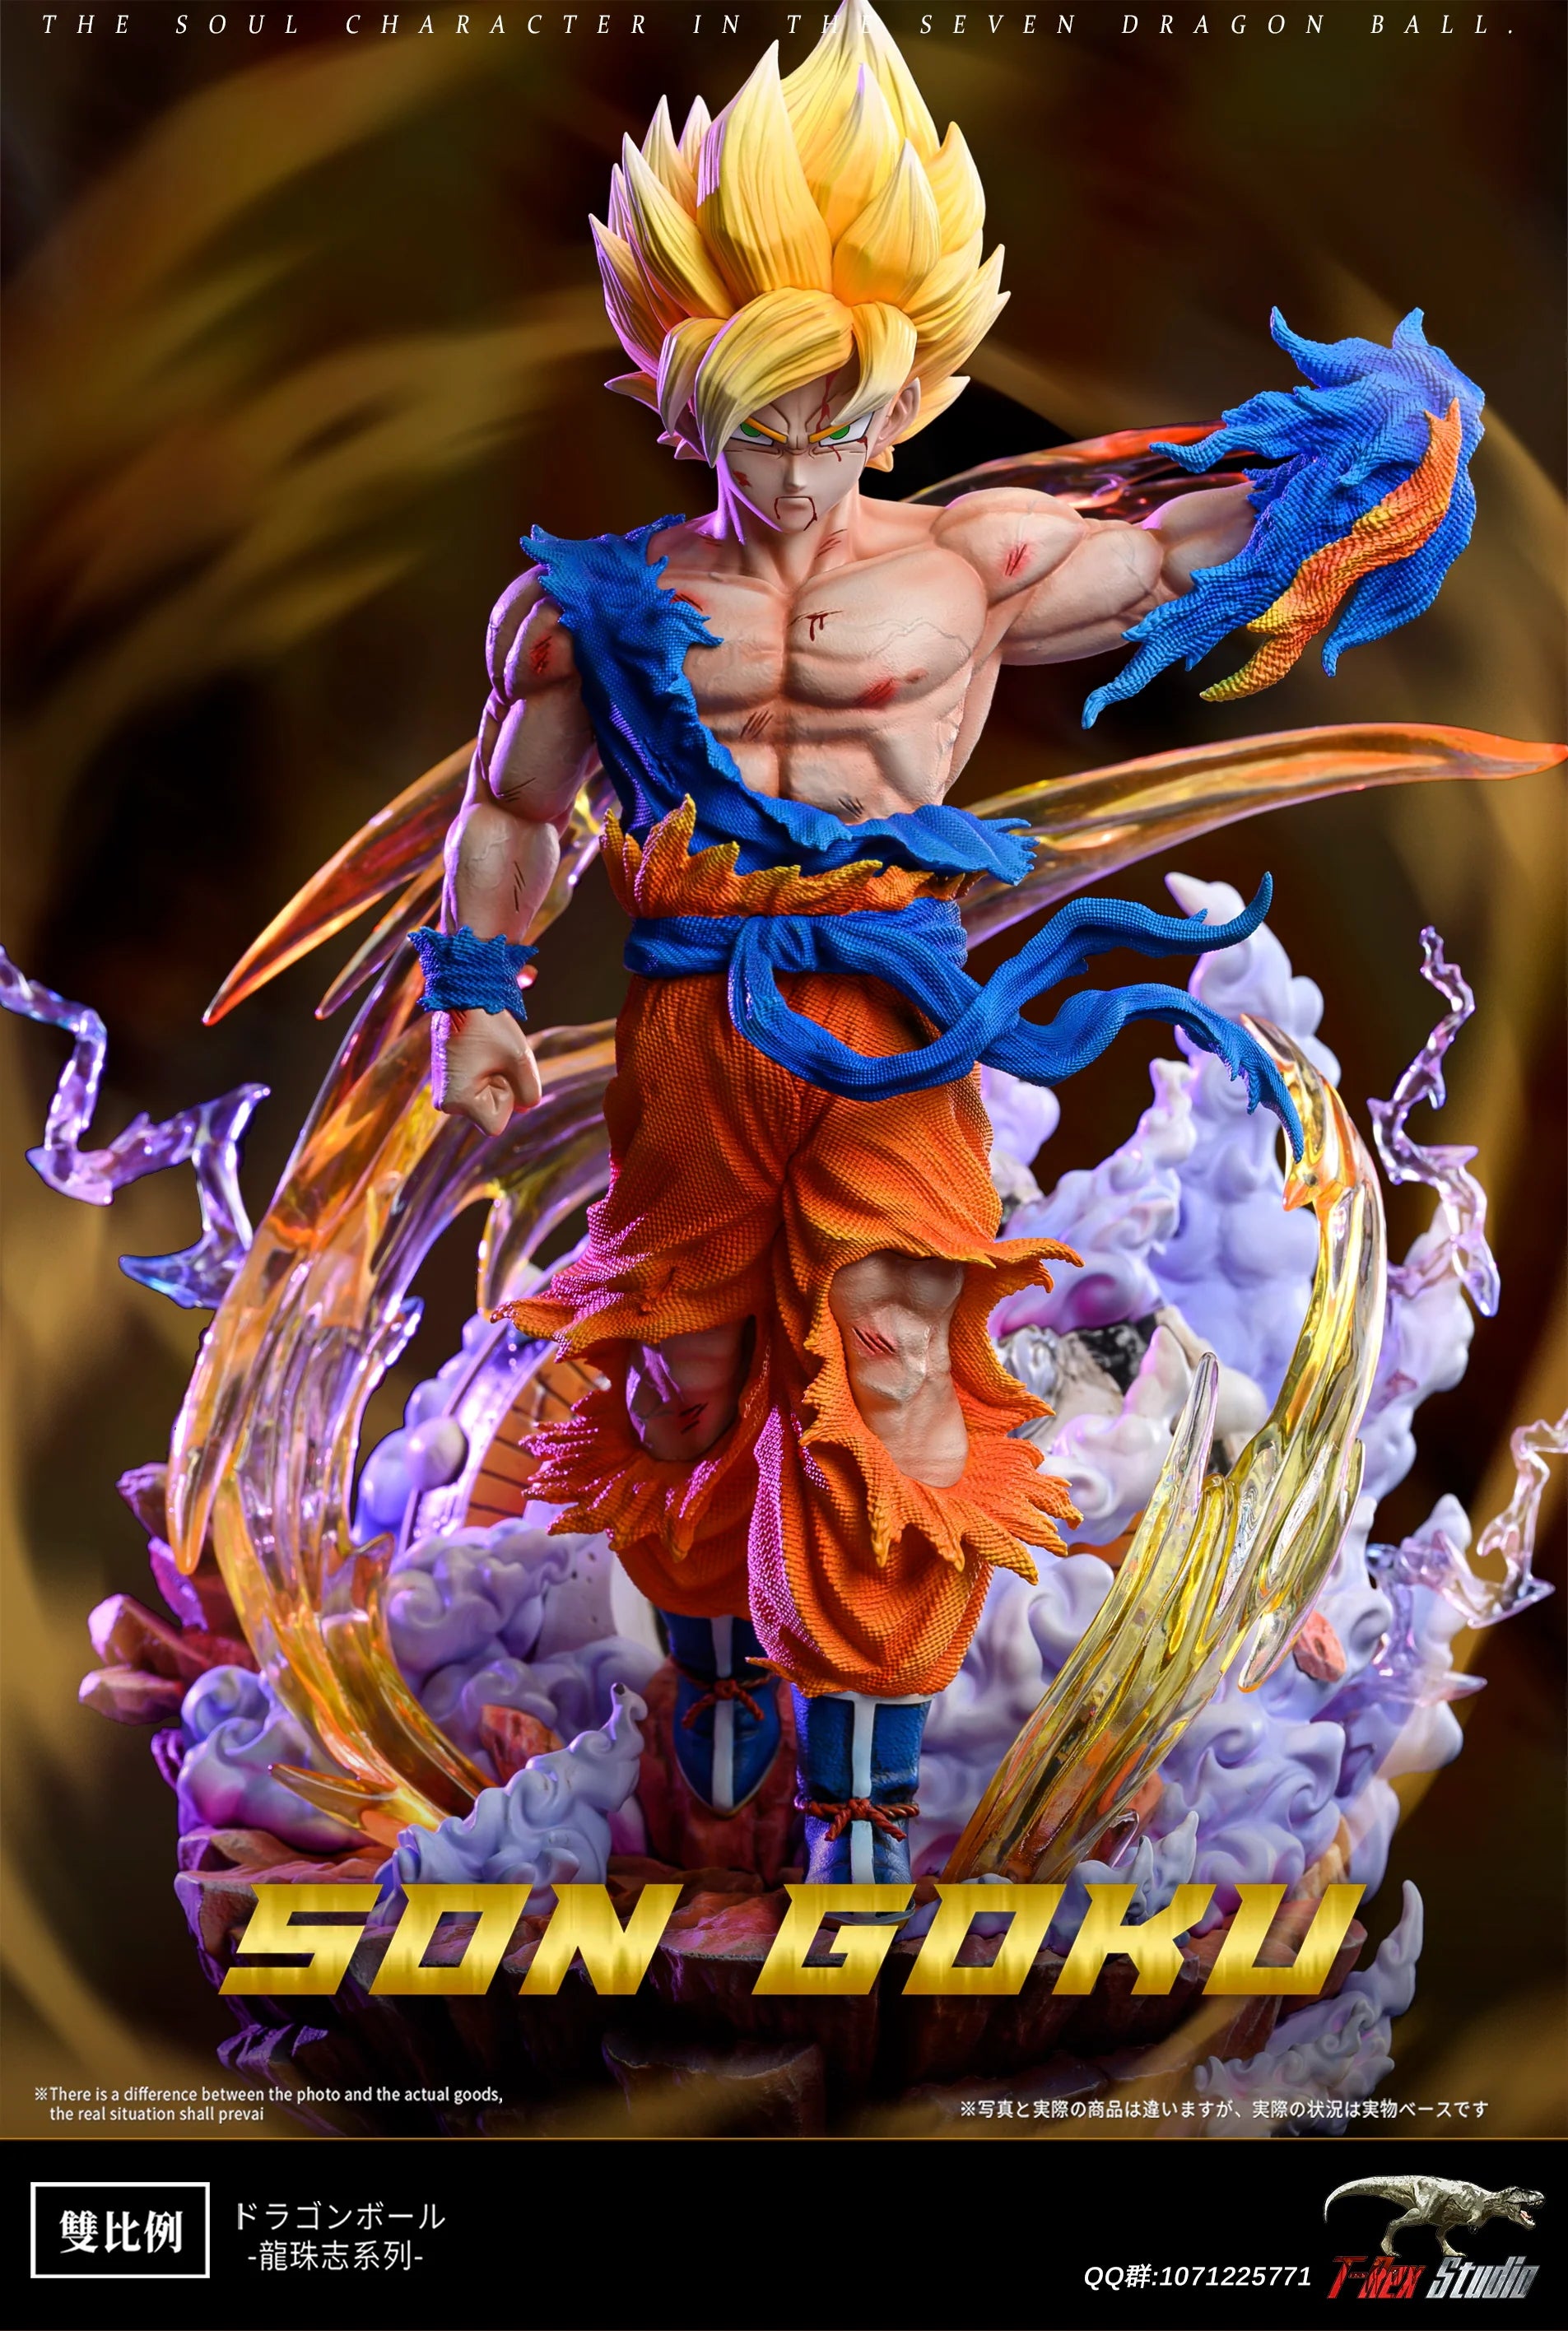 Infinite - SSJ3 Goku – StatueCorp